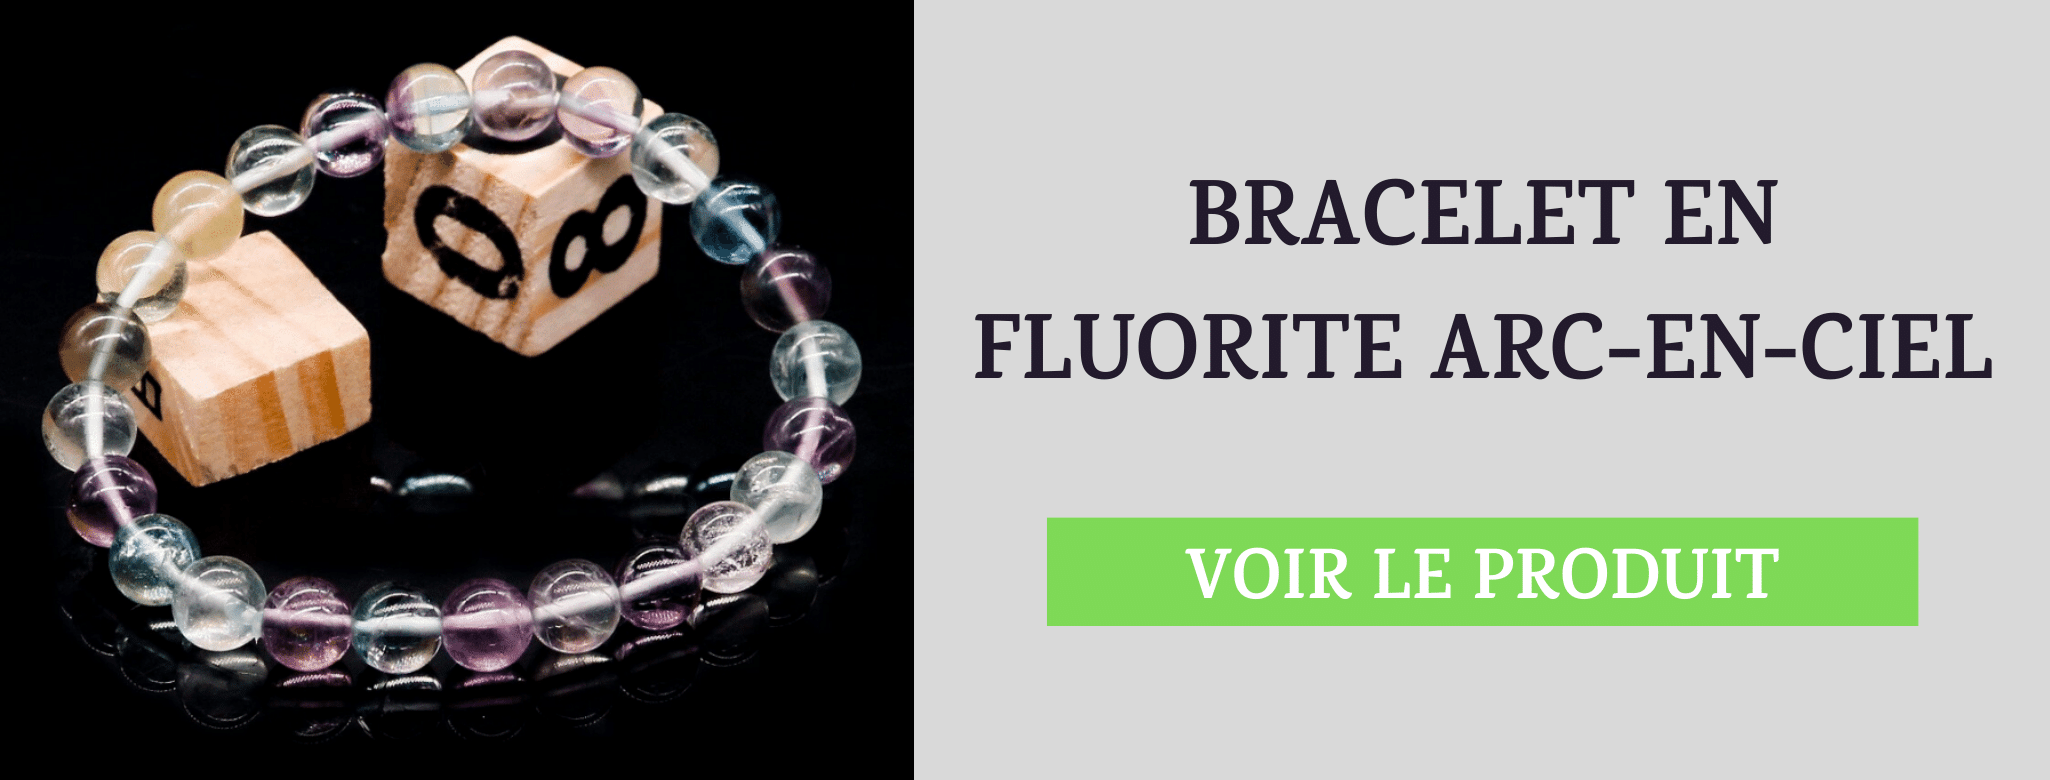 Bracelet Fluorite Arc-en-Ciel